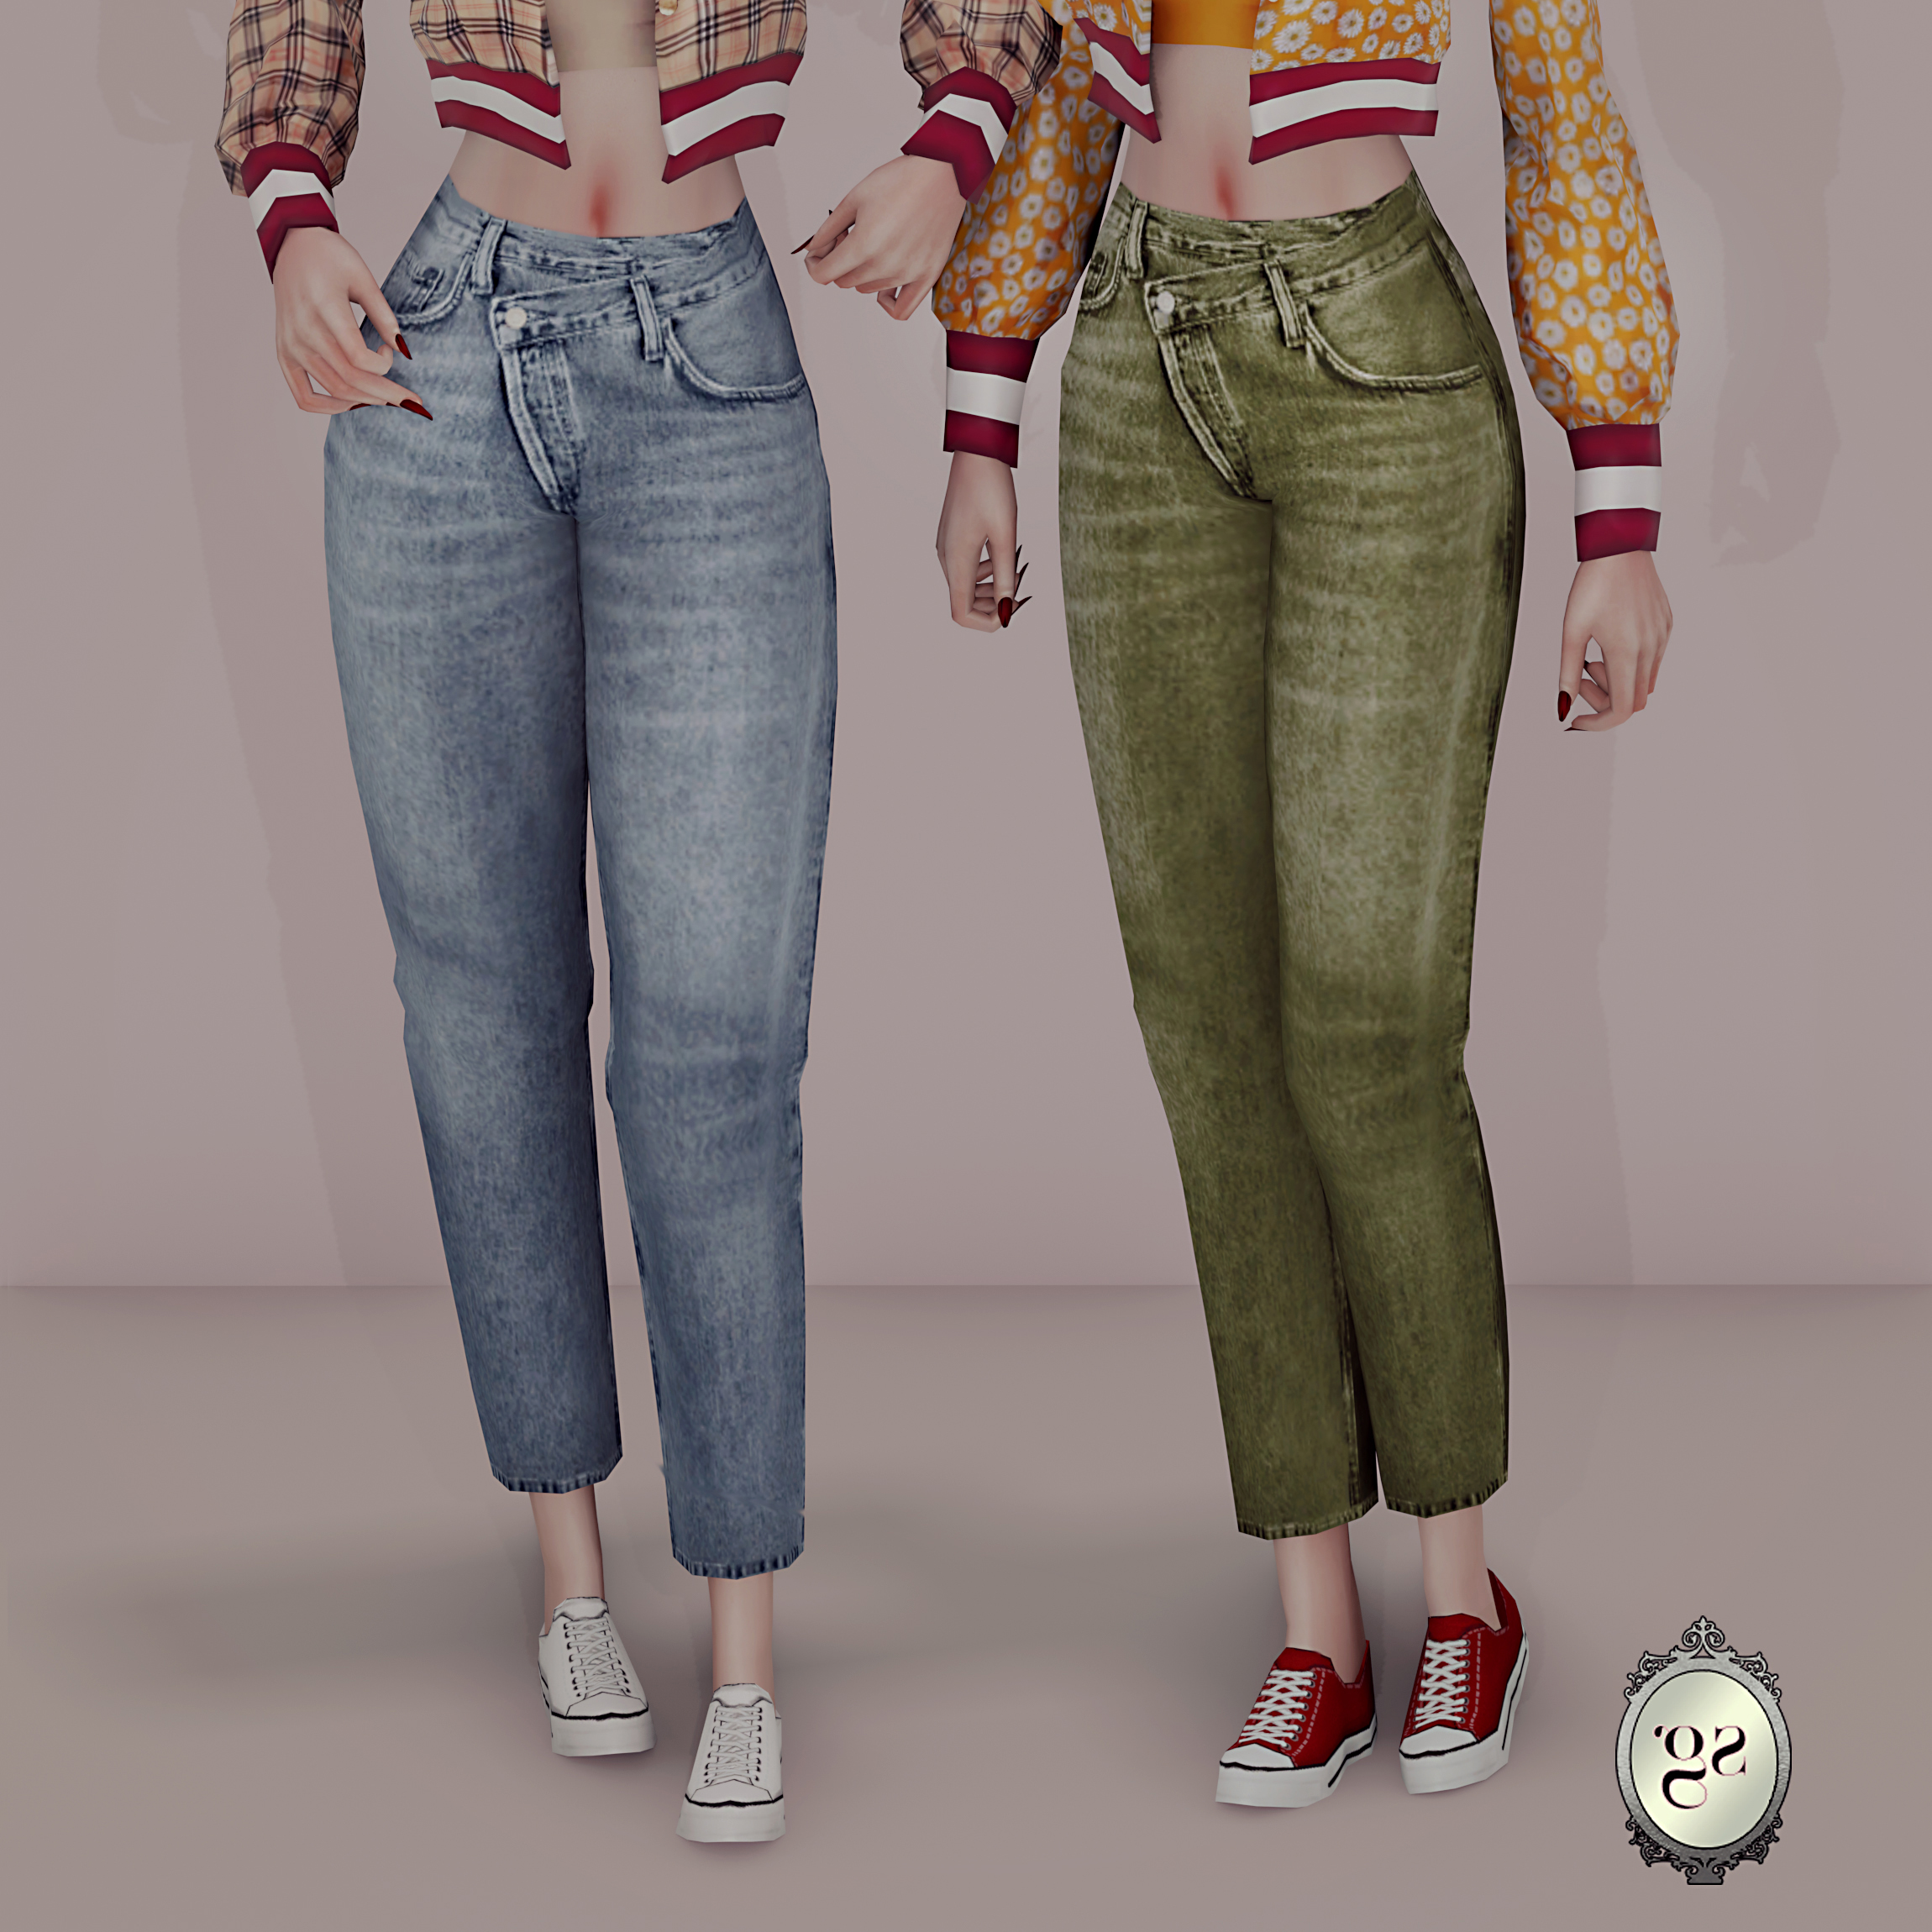 Boyfriend jeans - The Sims 4 Create a Sim - CurseForge